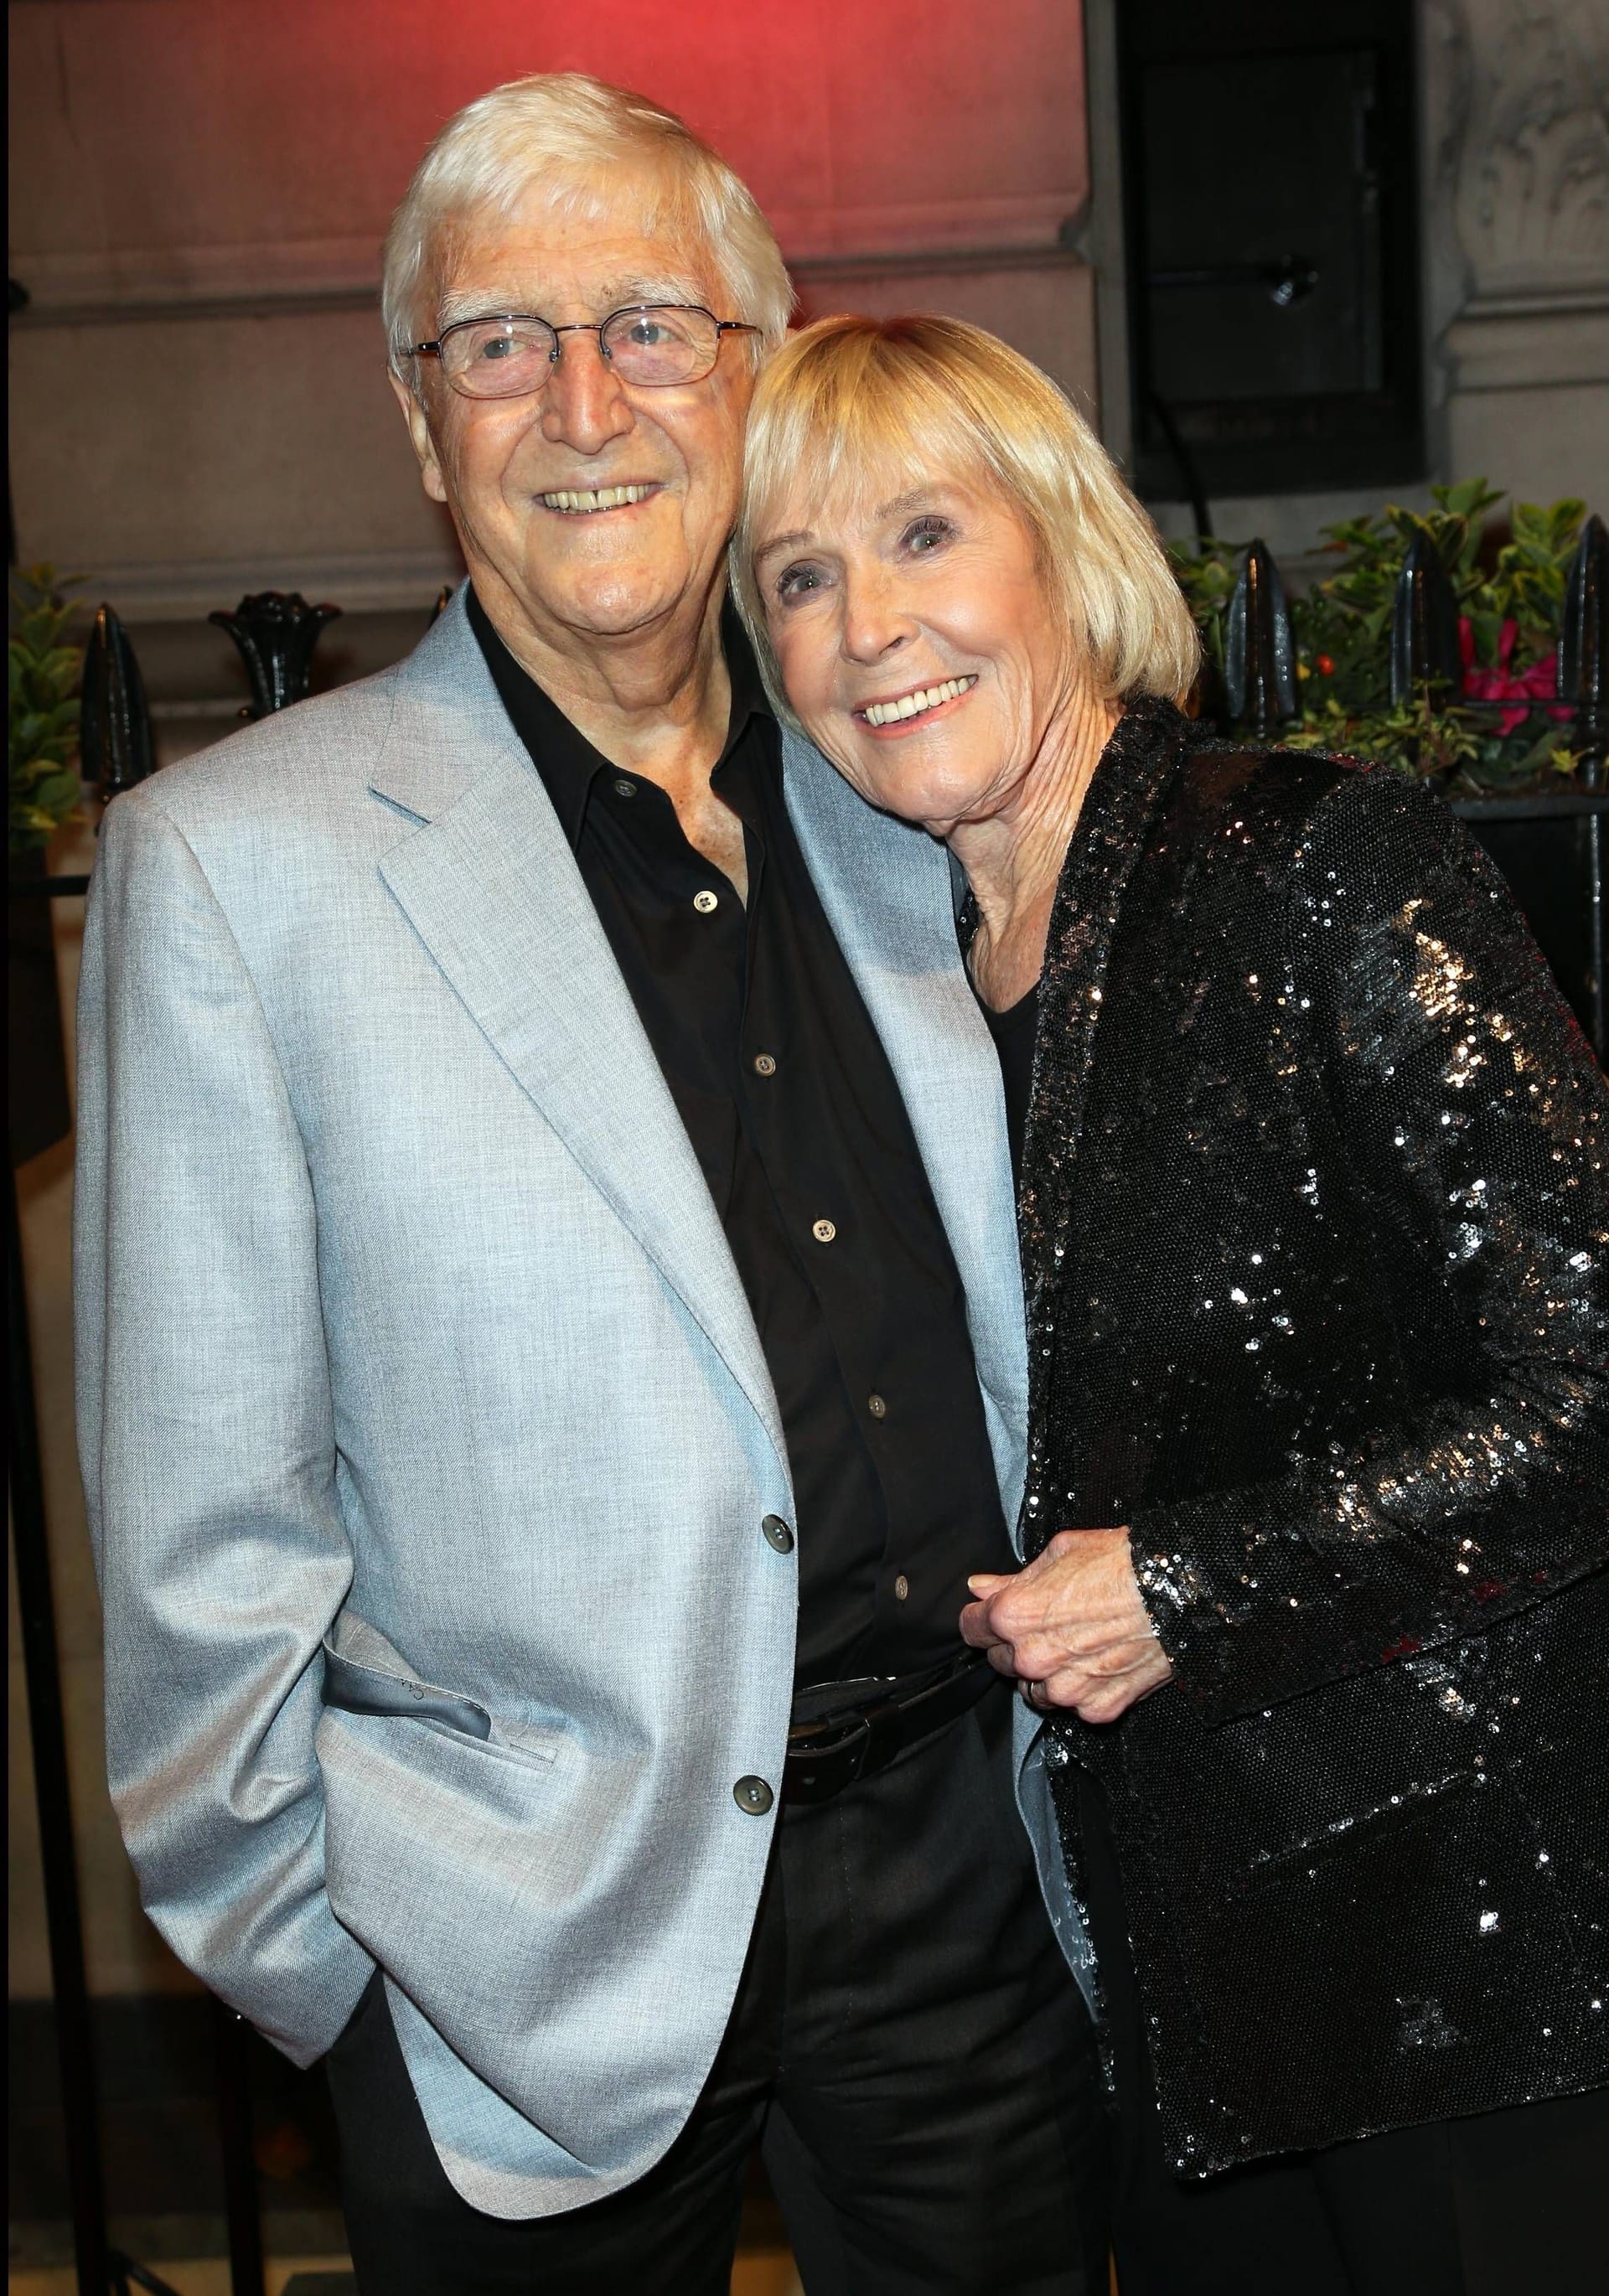 Michael Parkinson 2013 mit seiner Frau Mary.